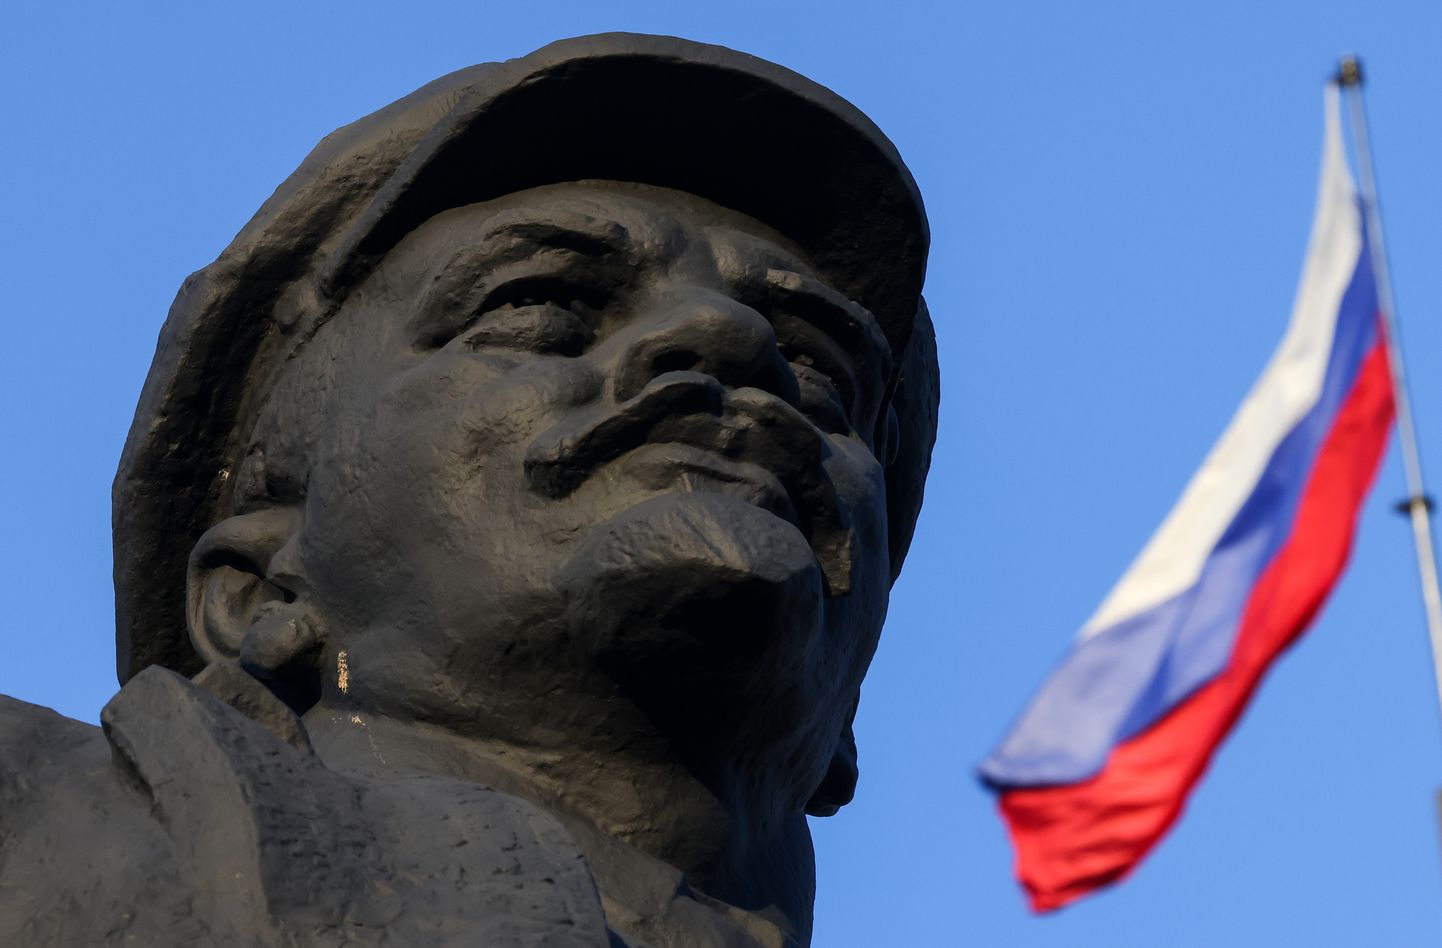 Venemaa revolutsionääri ja bolševike juhi Vladimir Iljitš Lenini kuju Ida-Ukrainas Donetskis, kus venemeelsed separatistid kuulutasid välja rahvavabariigi, mida Venemaa nüüd tunnustas. Näha on ka Venemaa lippu